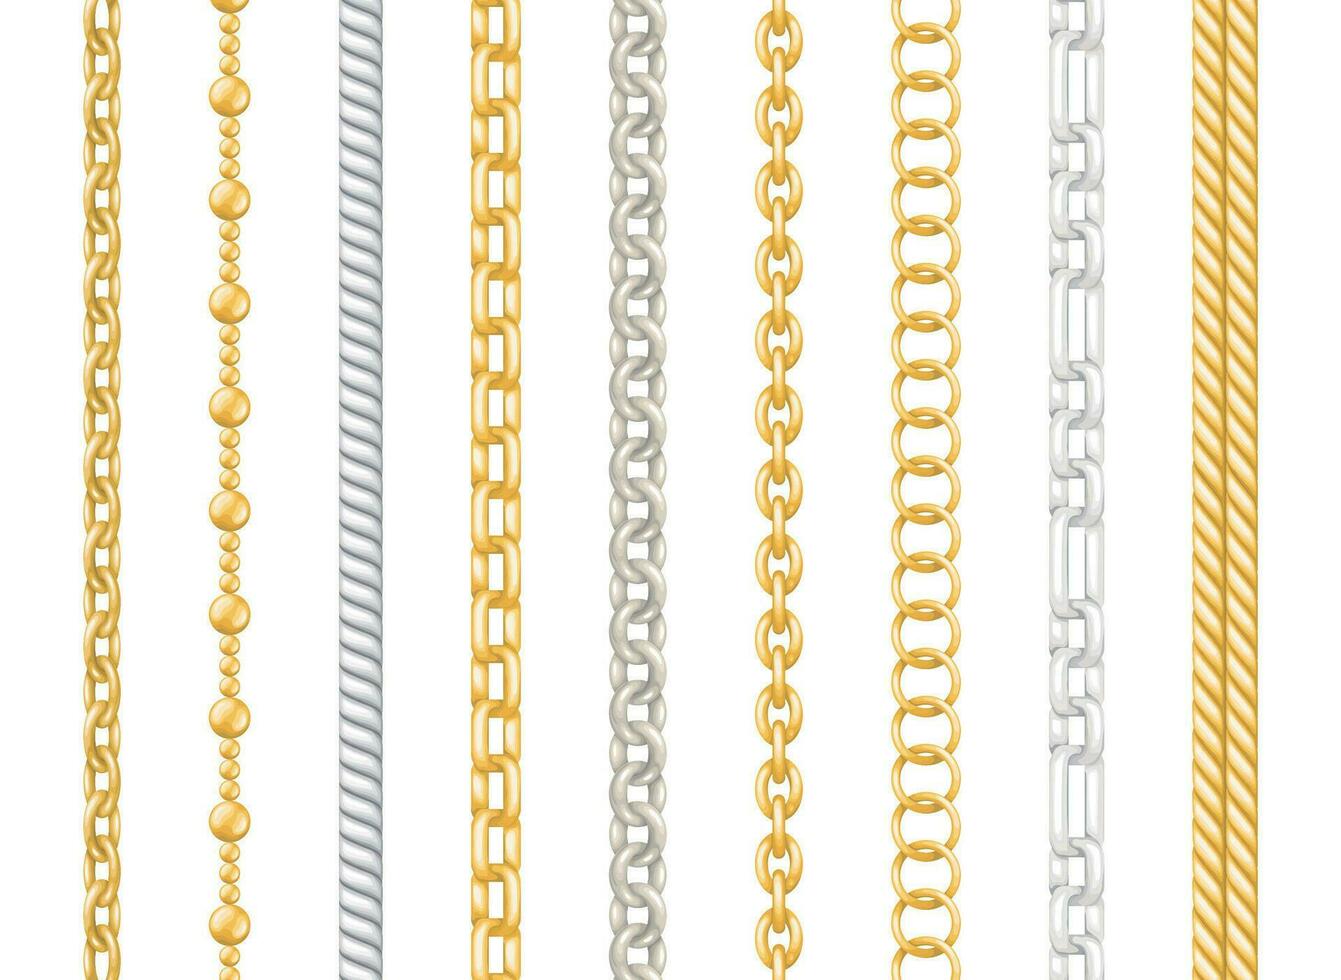 realistisch gedetailleerd 3d zilver en goud metaal decoratief kettingen set. vector